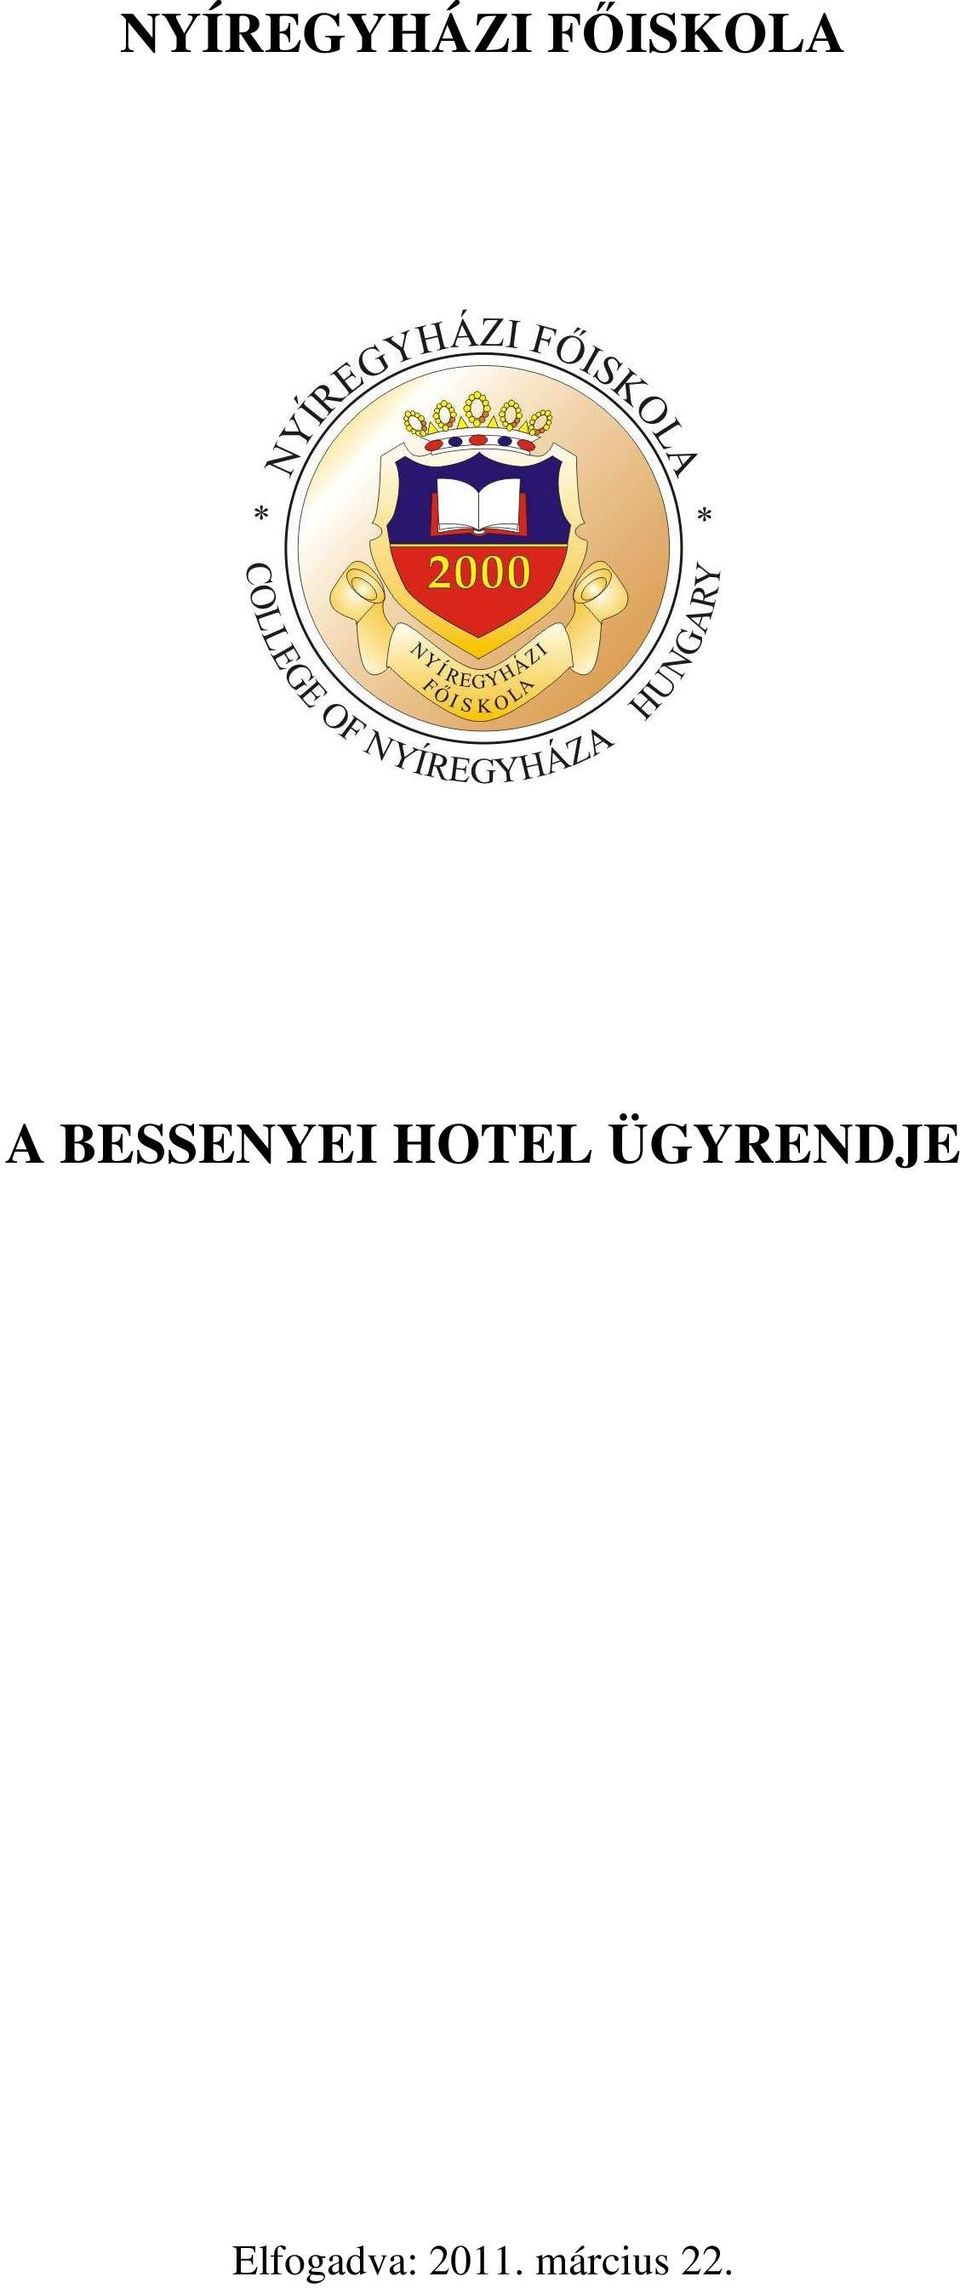 BESSENYEI HOTEL